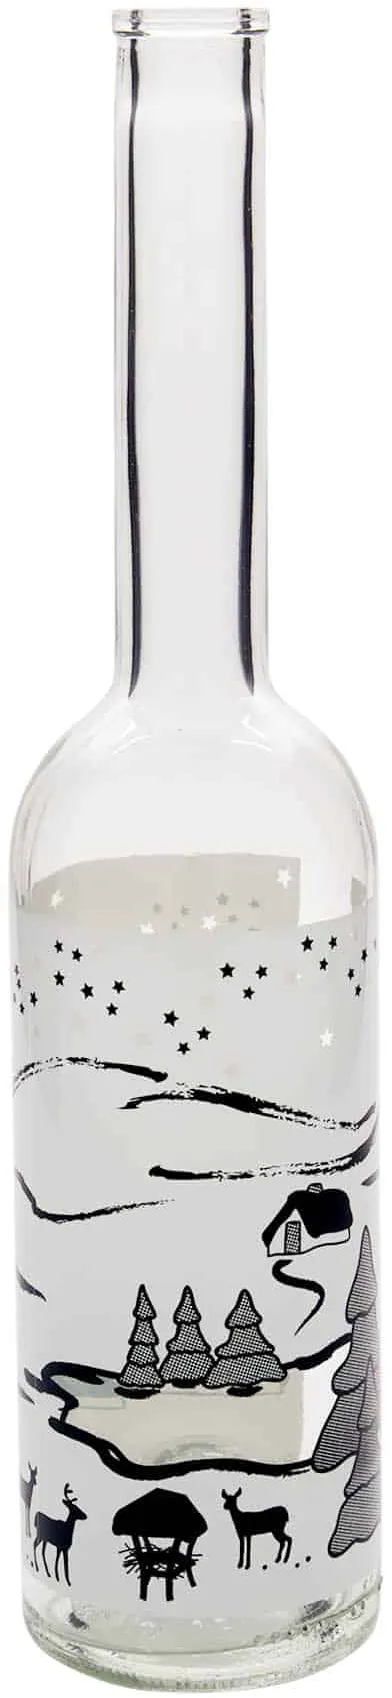 500 ml Bottiglia di vetro 'Opera', motivo: Bianco sogno d'inverno, imboccatura: ...